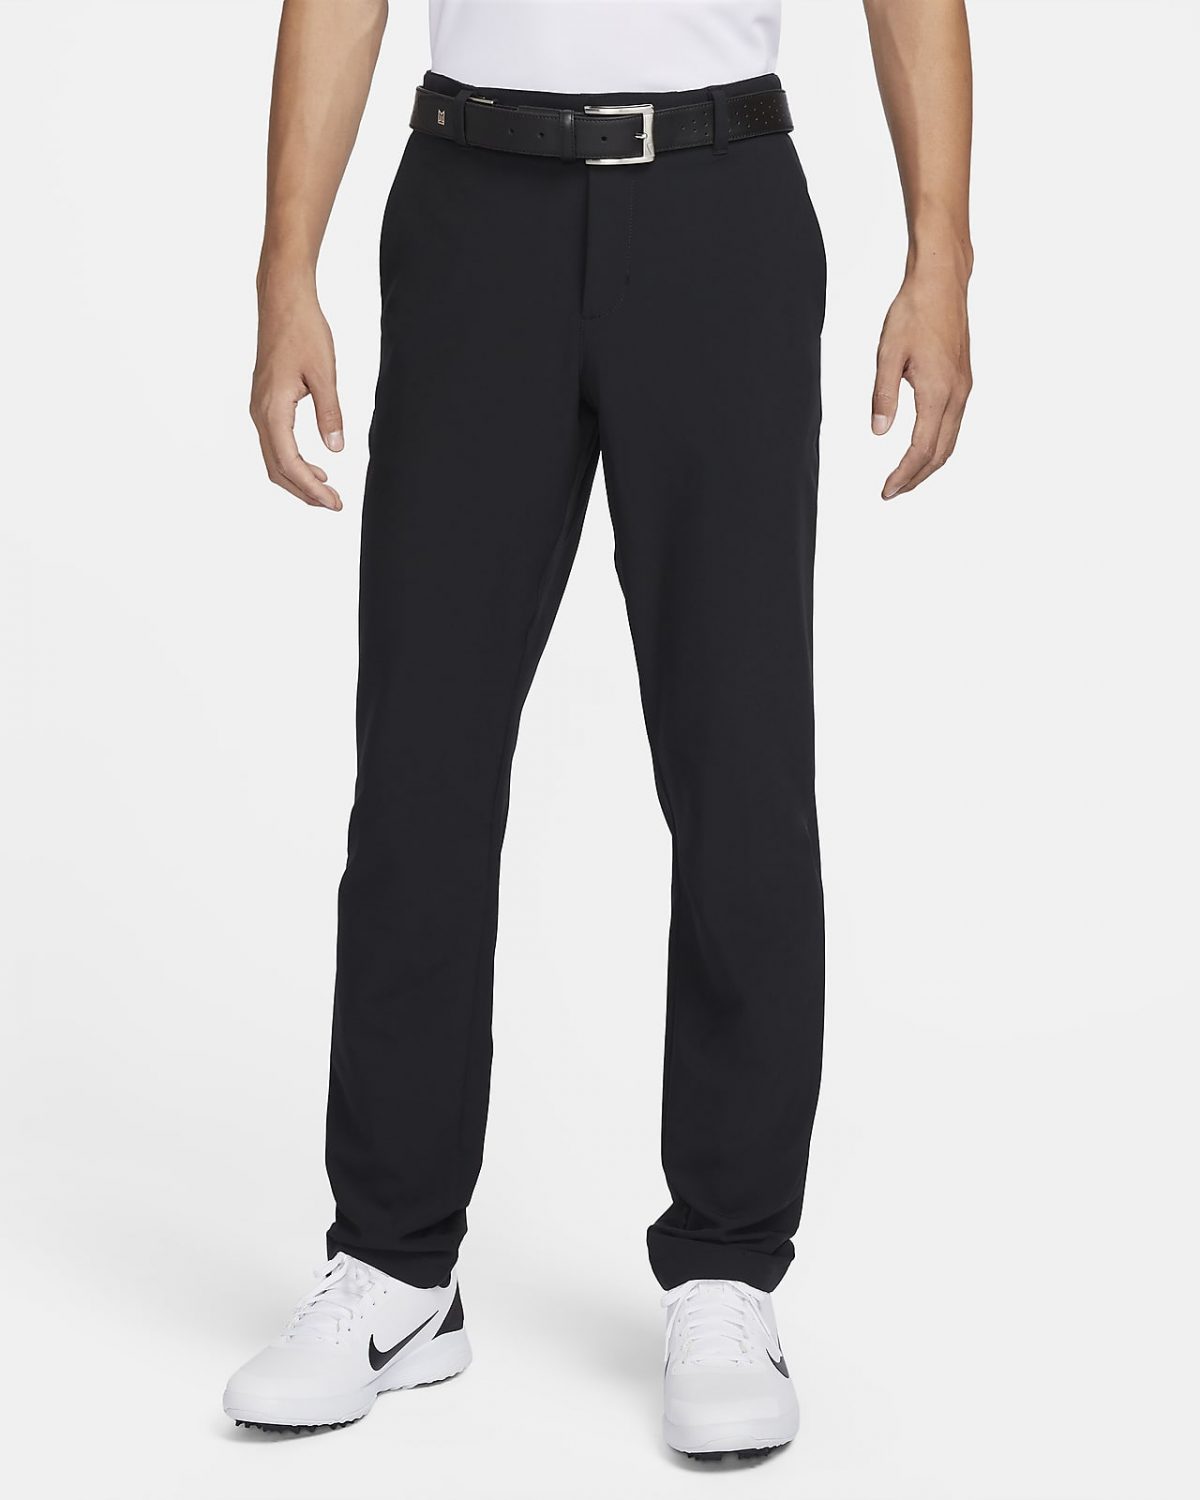 Мужские брюки Nike Dri-FIT Vapor фото